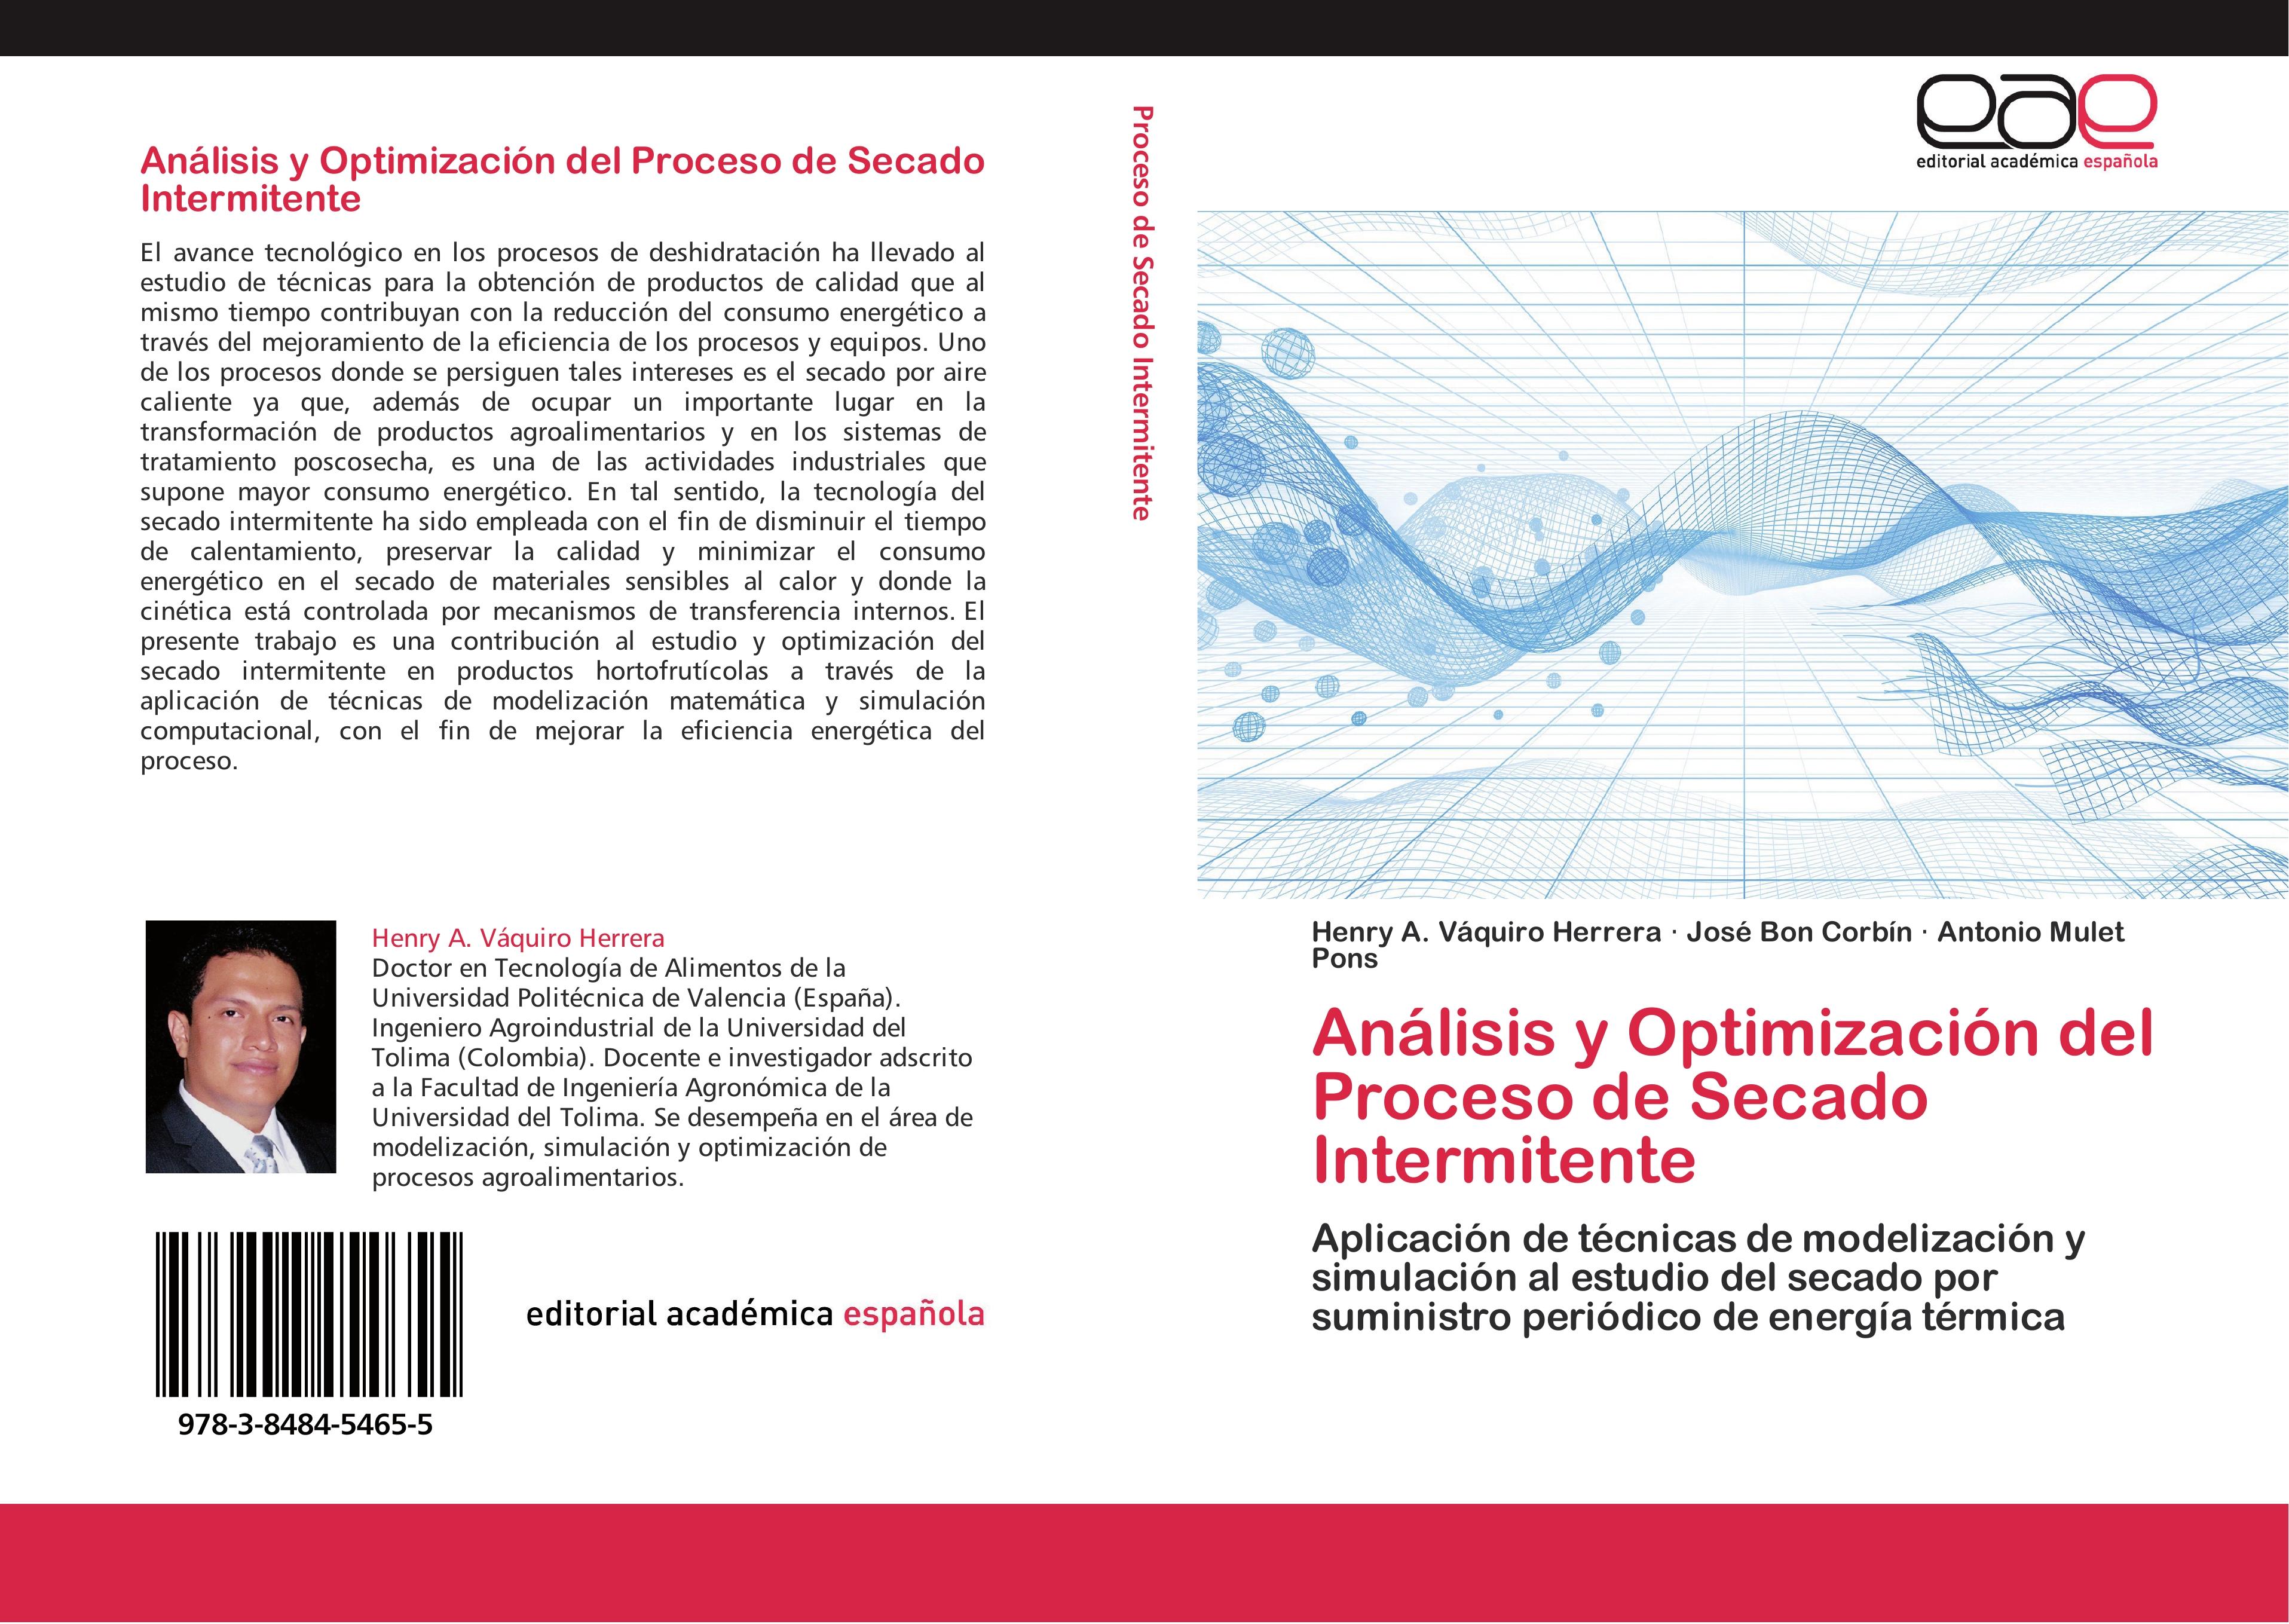 Análisis y Optimización del Proceso de Secado Intermitente - Henry A. Váquiro Herrera|José Bon Corbín|Antonio Mulet Pons